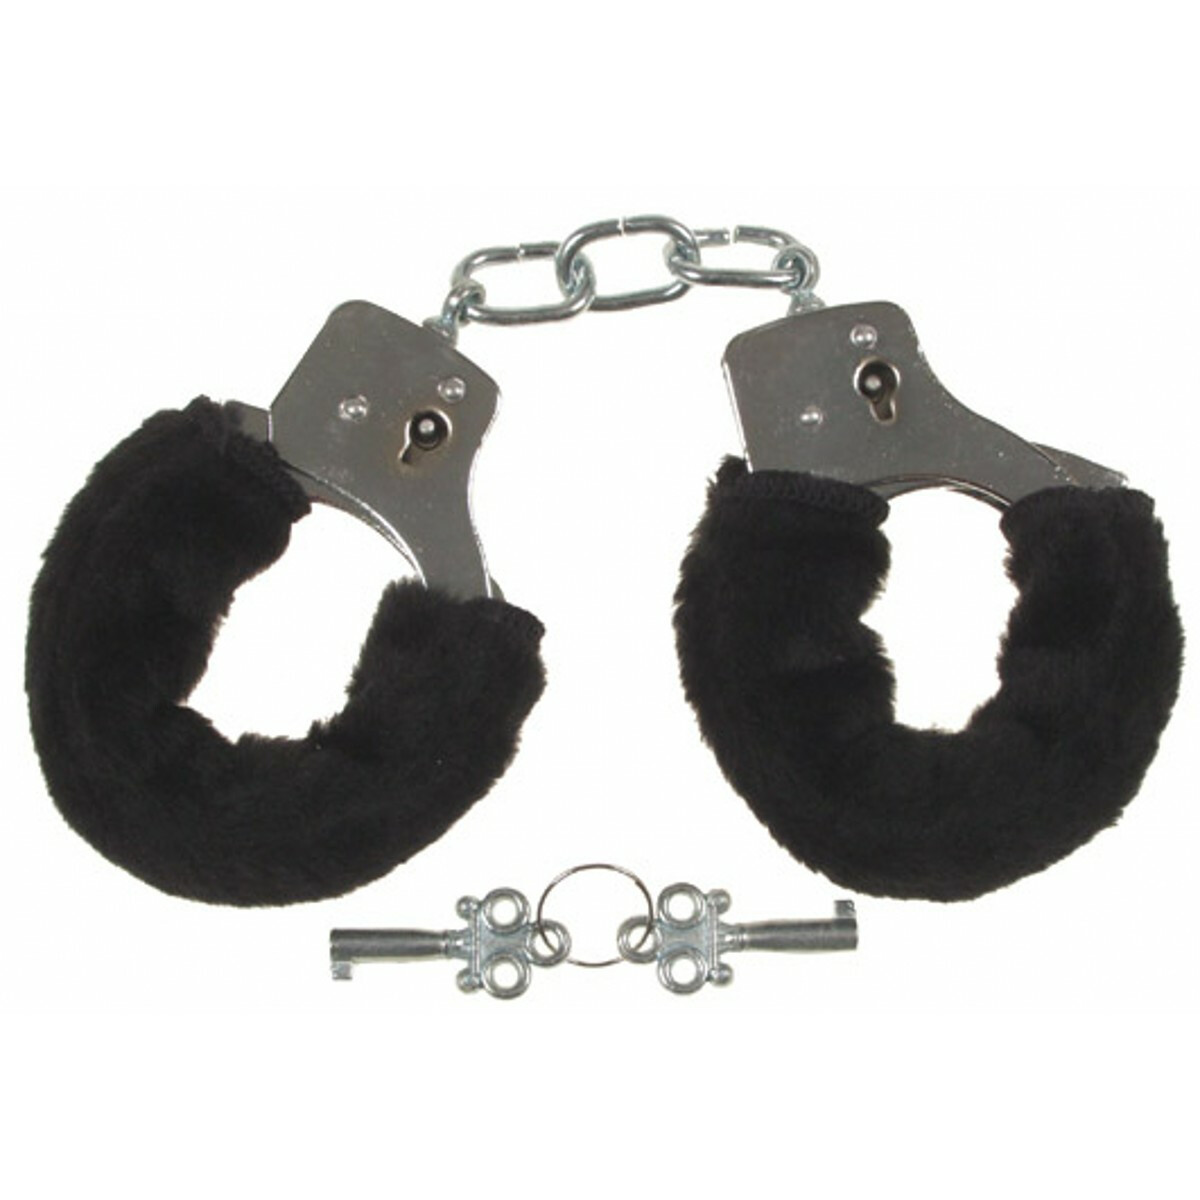  Handschellen, mit 2 Schlüssel, chrom mit Fellüberzug in schwarz